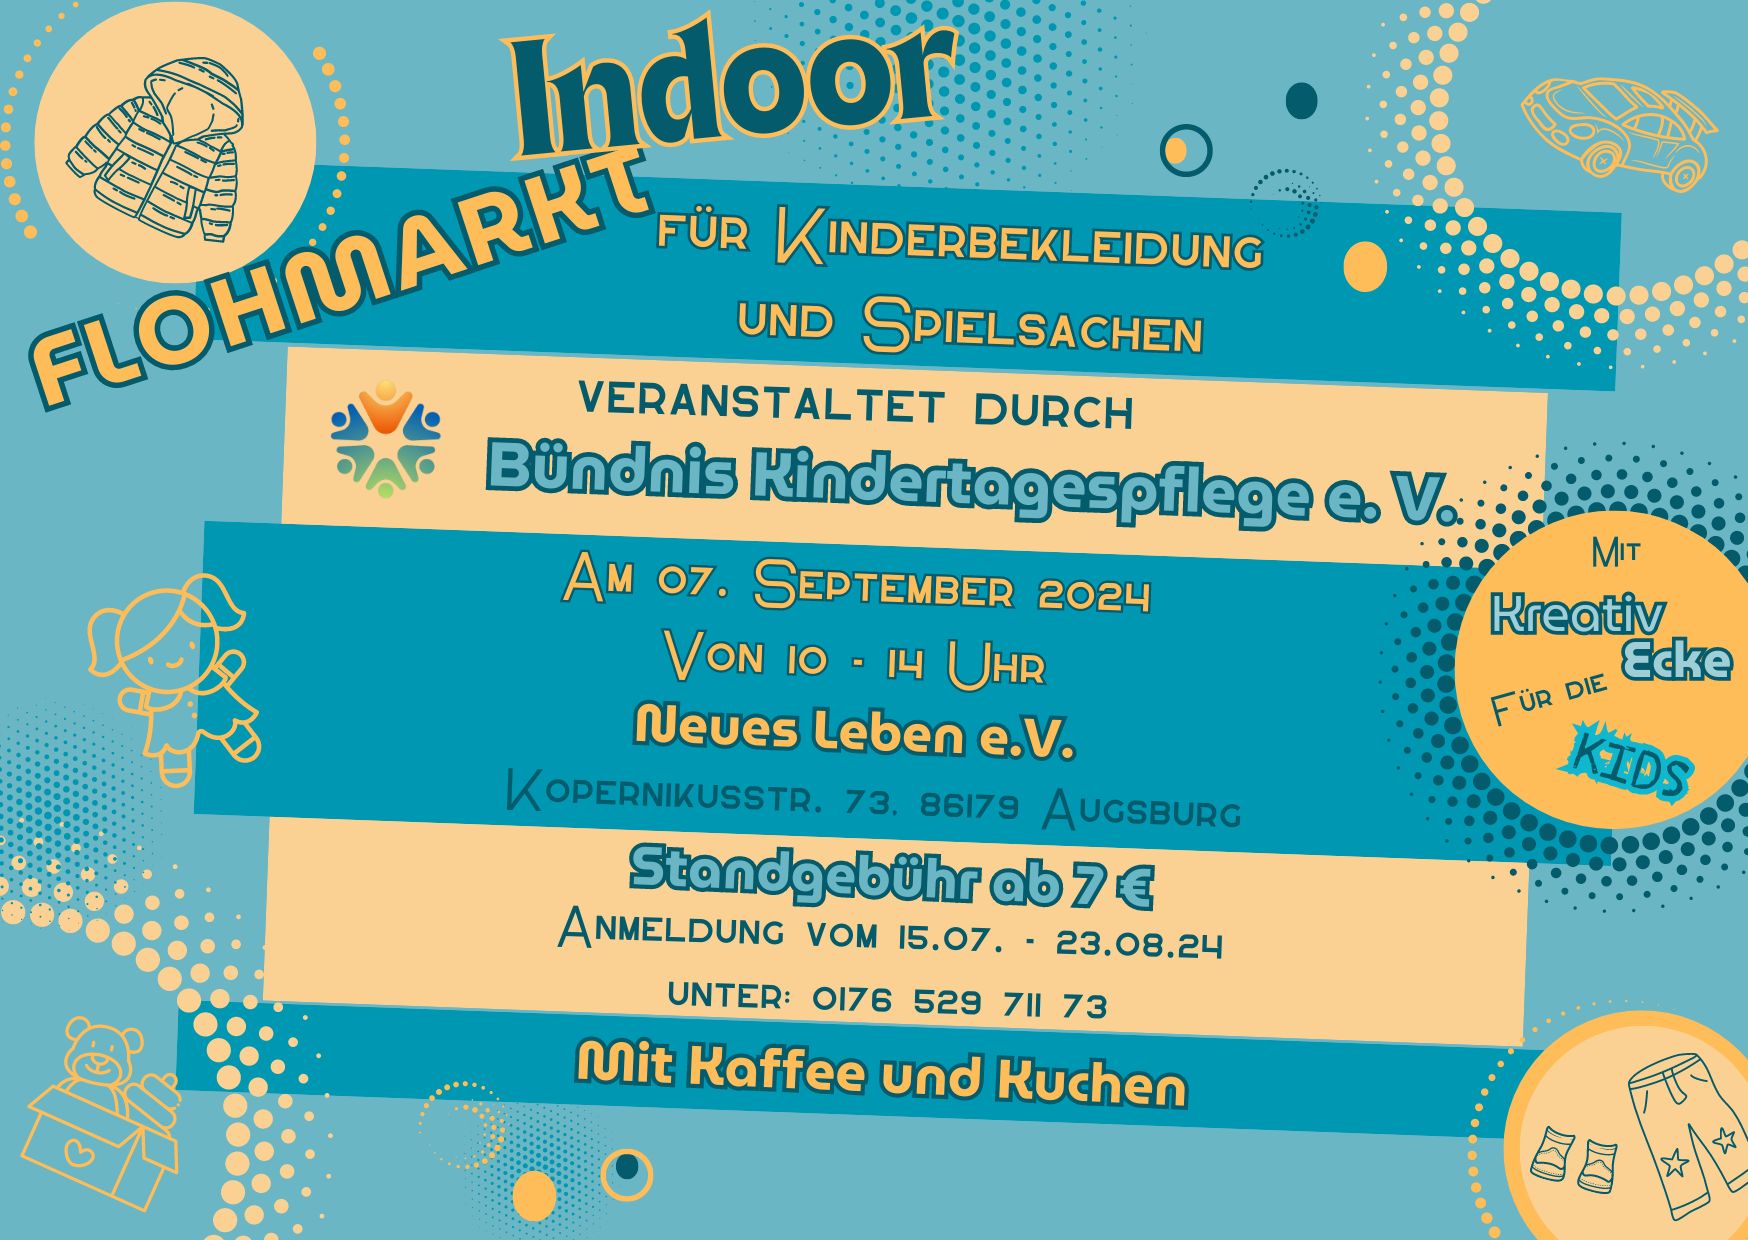 Indoor-Flohmarkt-Kinderbekleidung-Spielsachen-Kreativ-Ecke-Augsburg-Buendnis-Kindertagespflege